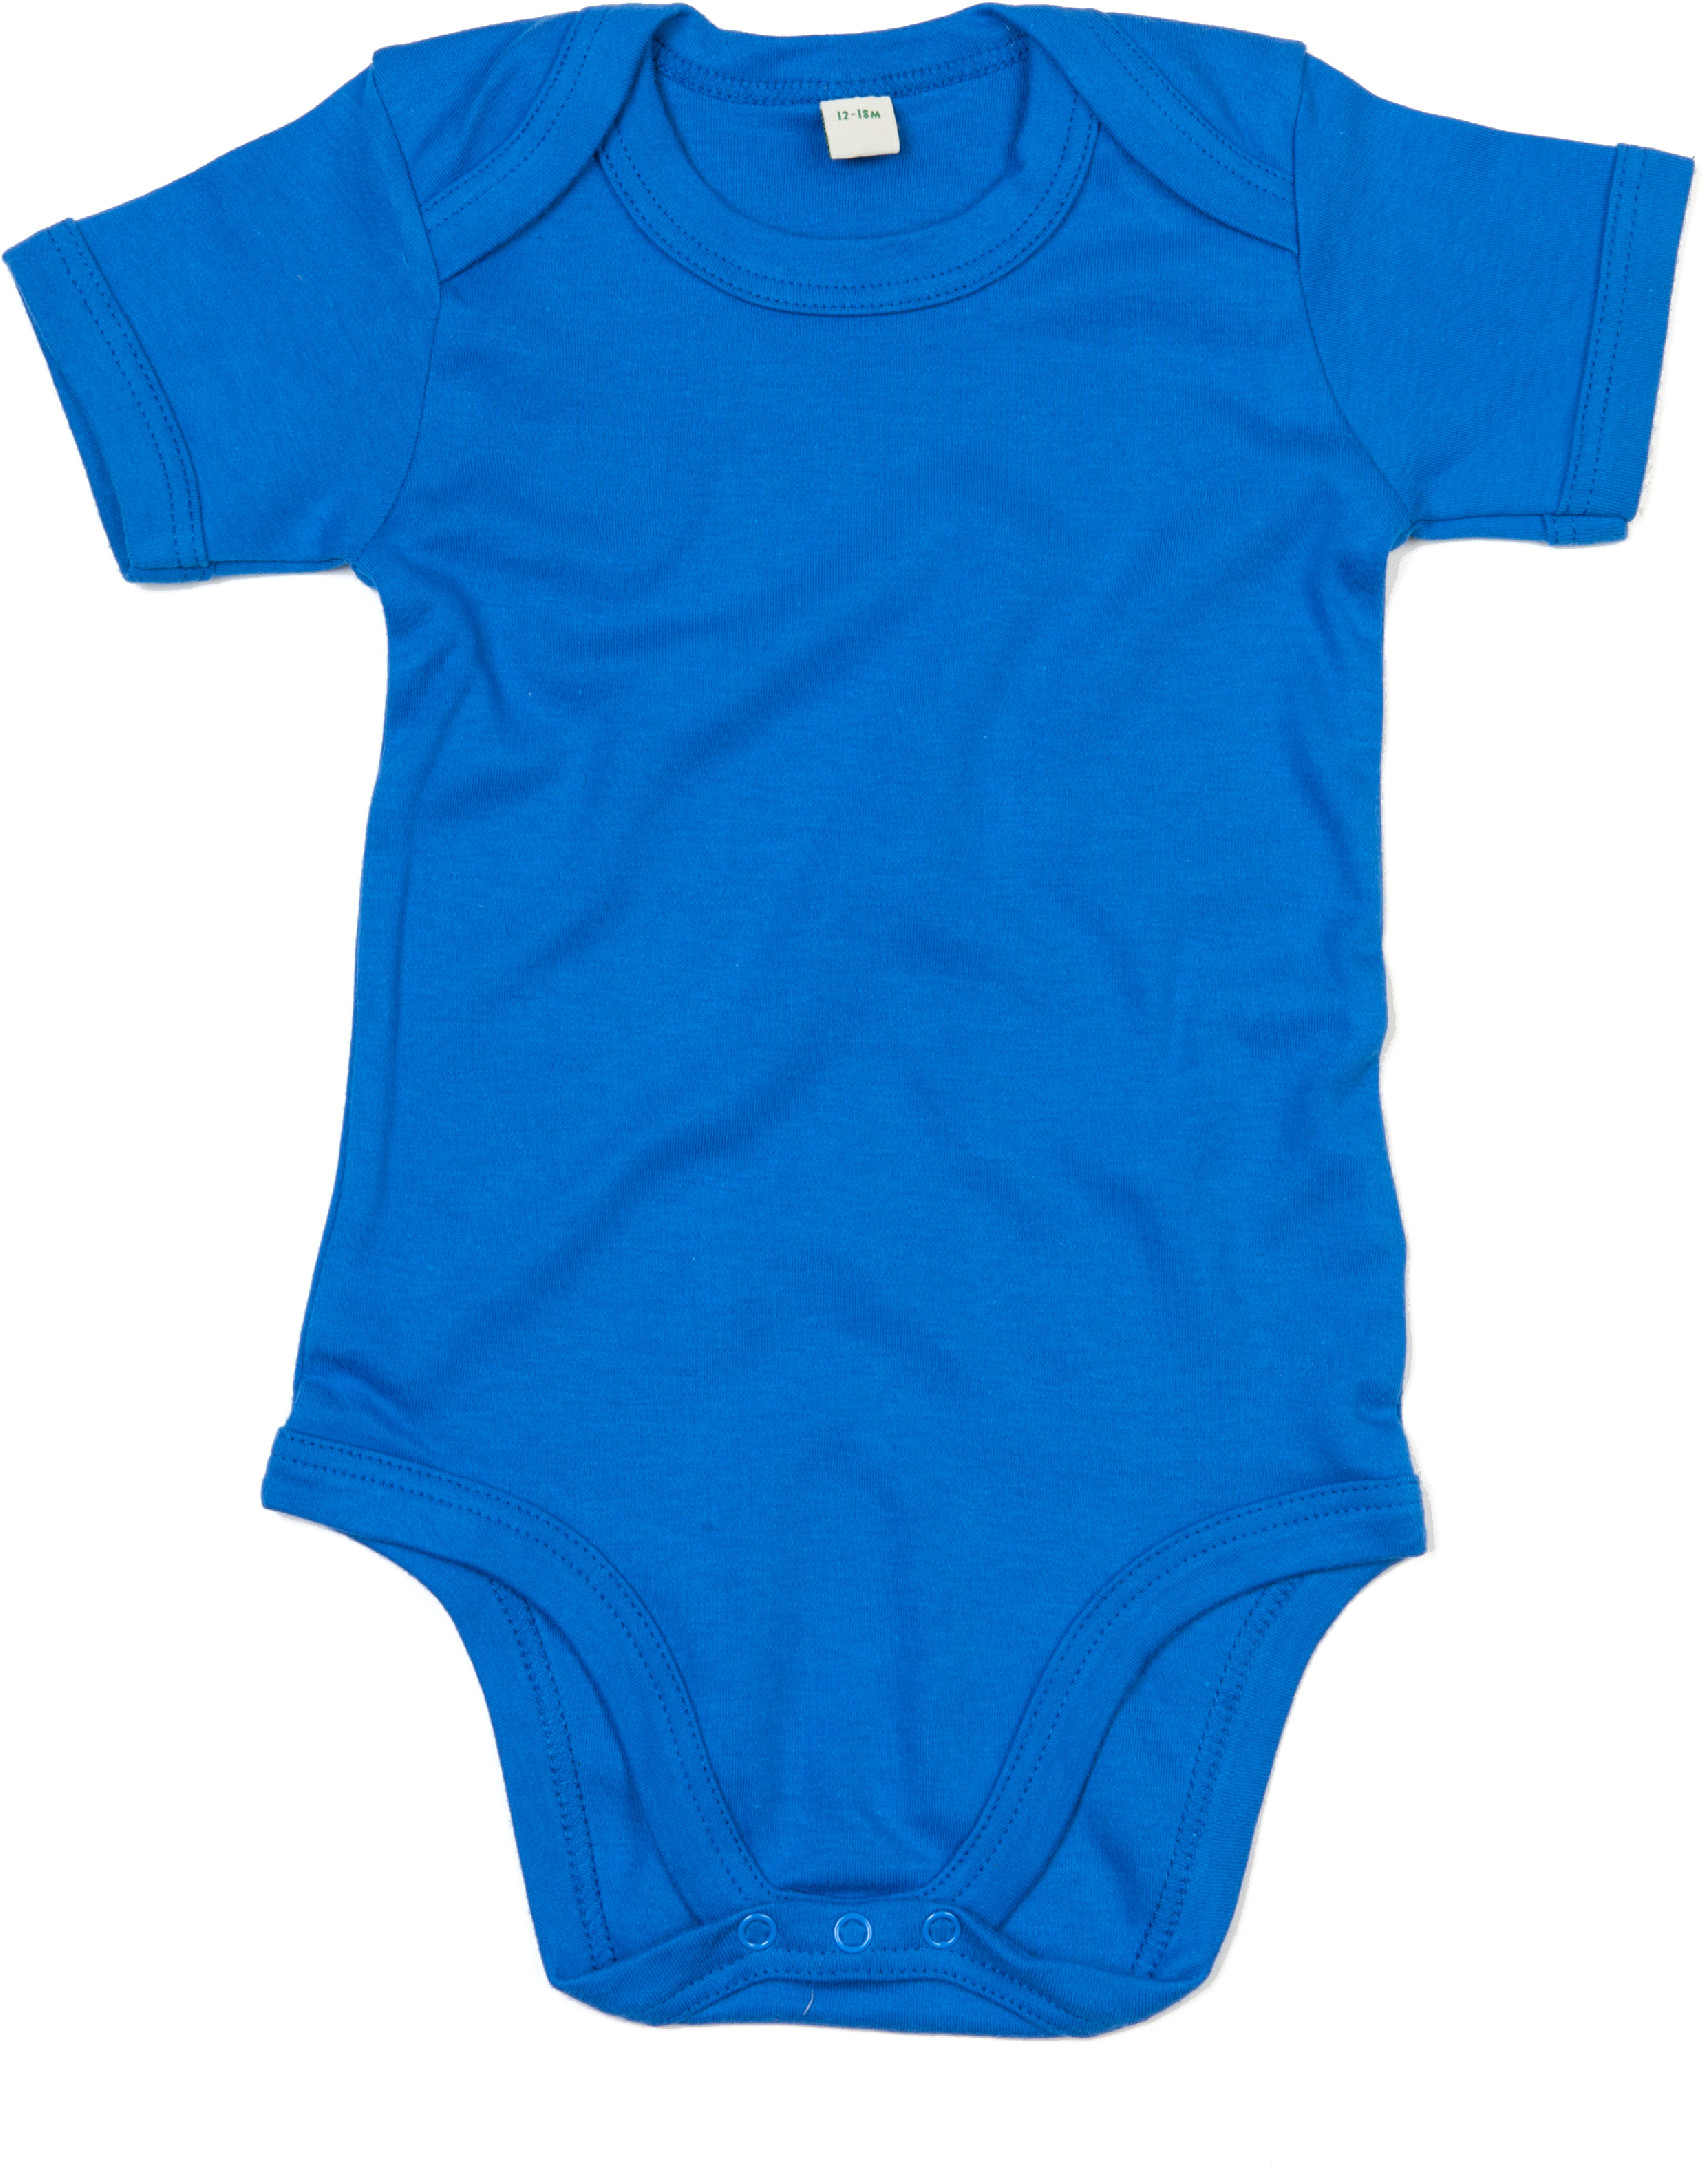 Dětské body BZ10 Barva: snorkel blue, Velikost: 6-12 měsíců